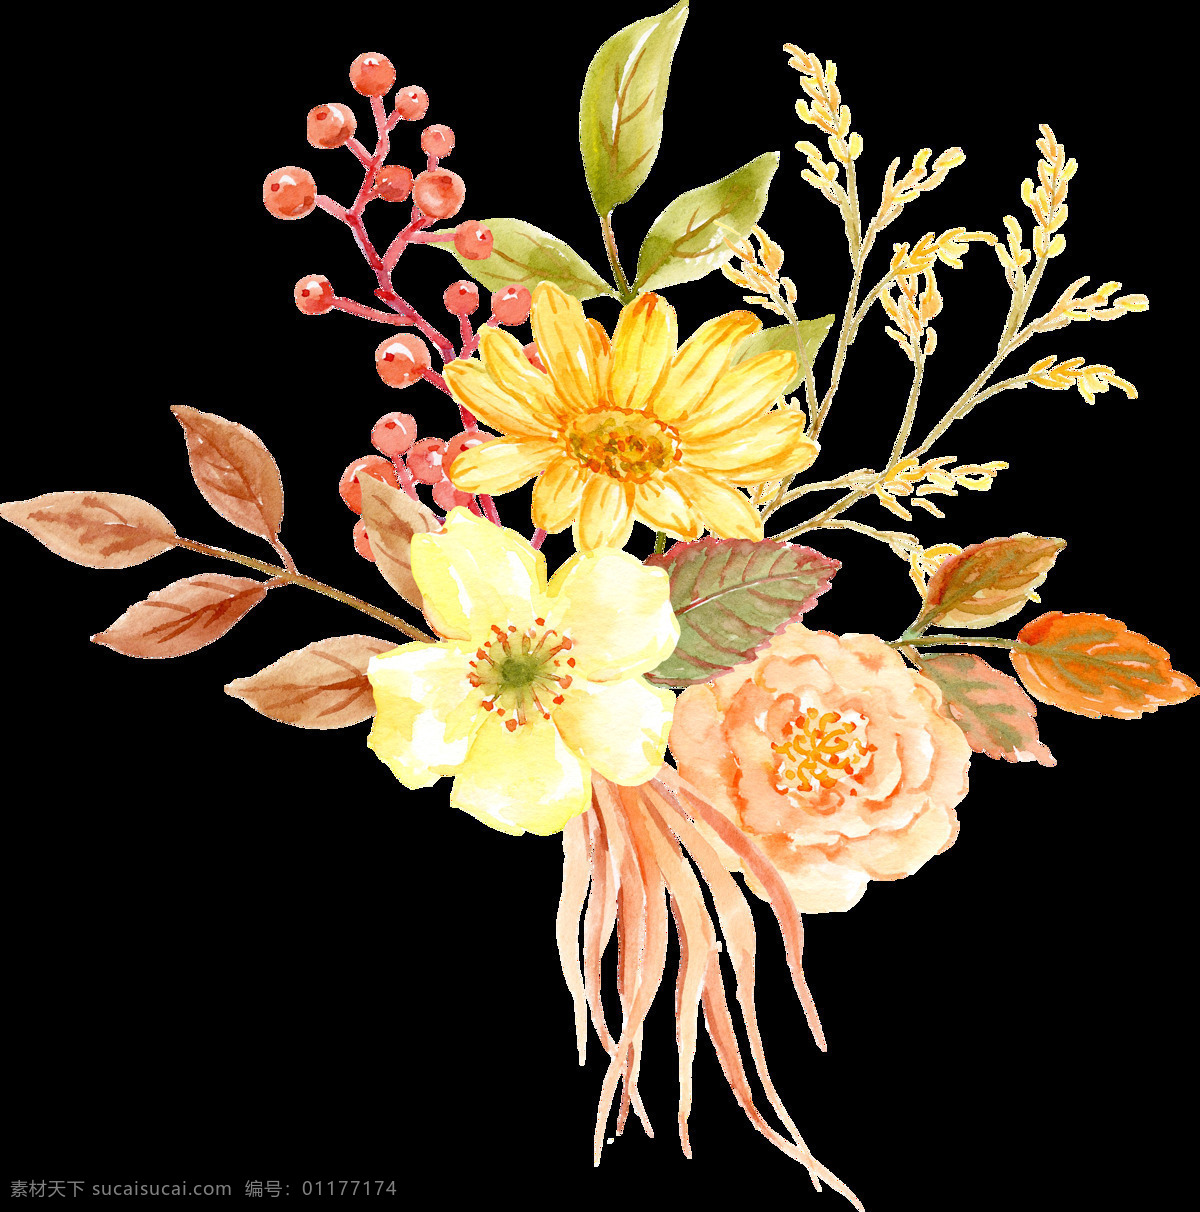 水彩 花朵 装饰 花圈花环 鲜艳花朵 植物花朵 花朵装饰 花卉图案 水彩花朵 婚礼装饰 文化艺术 绘画书法